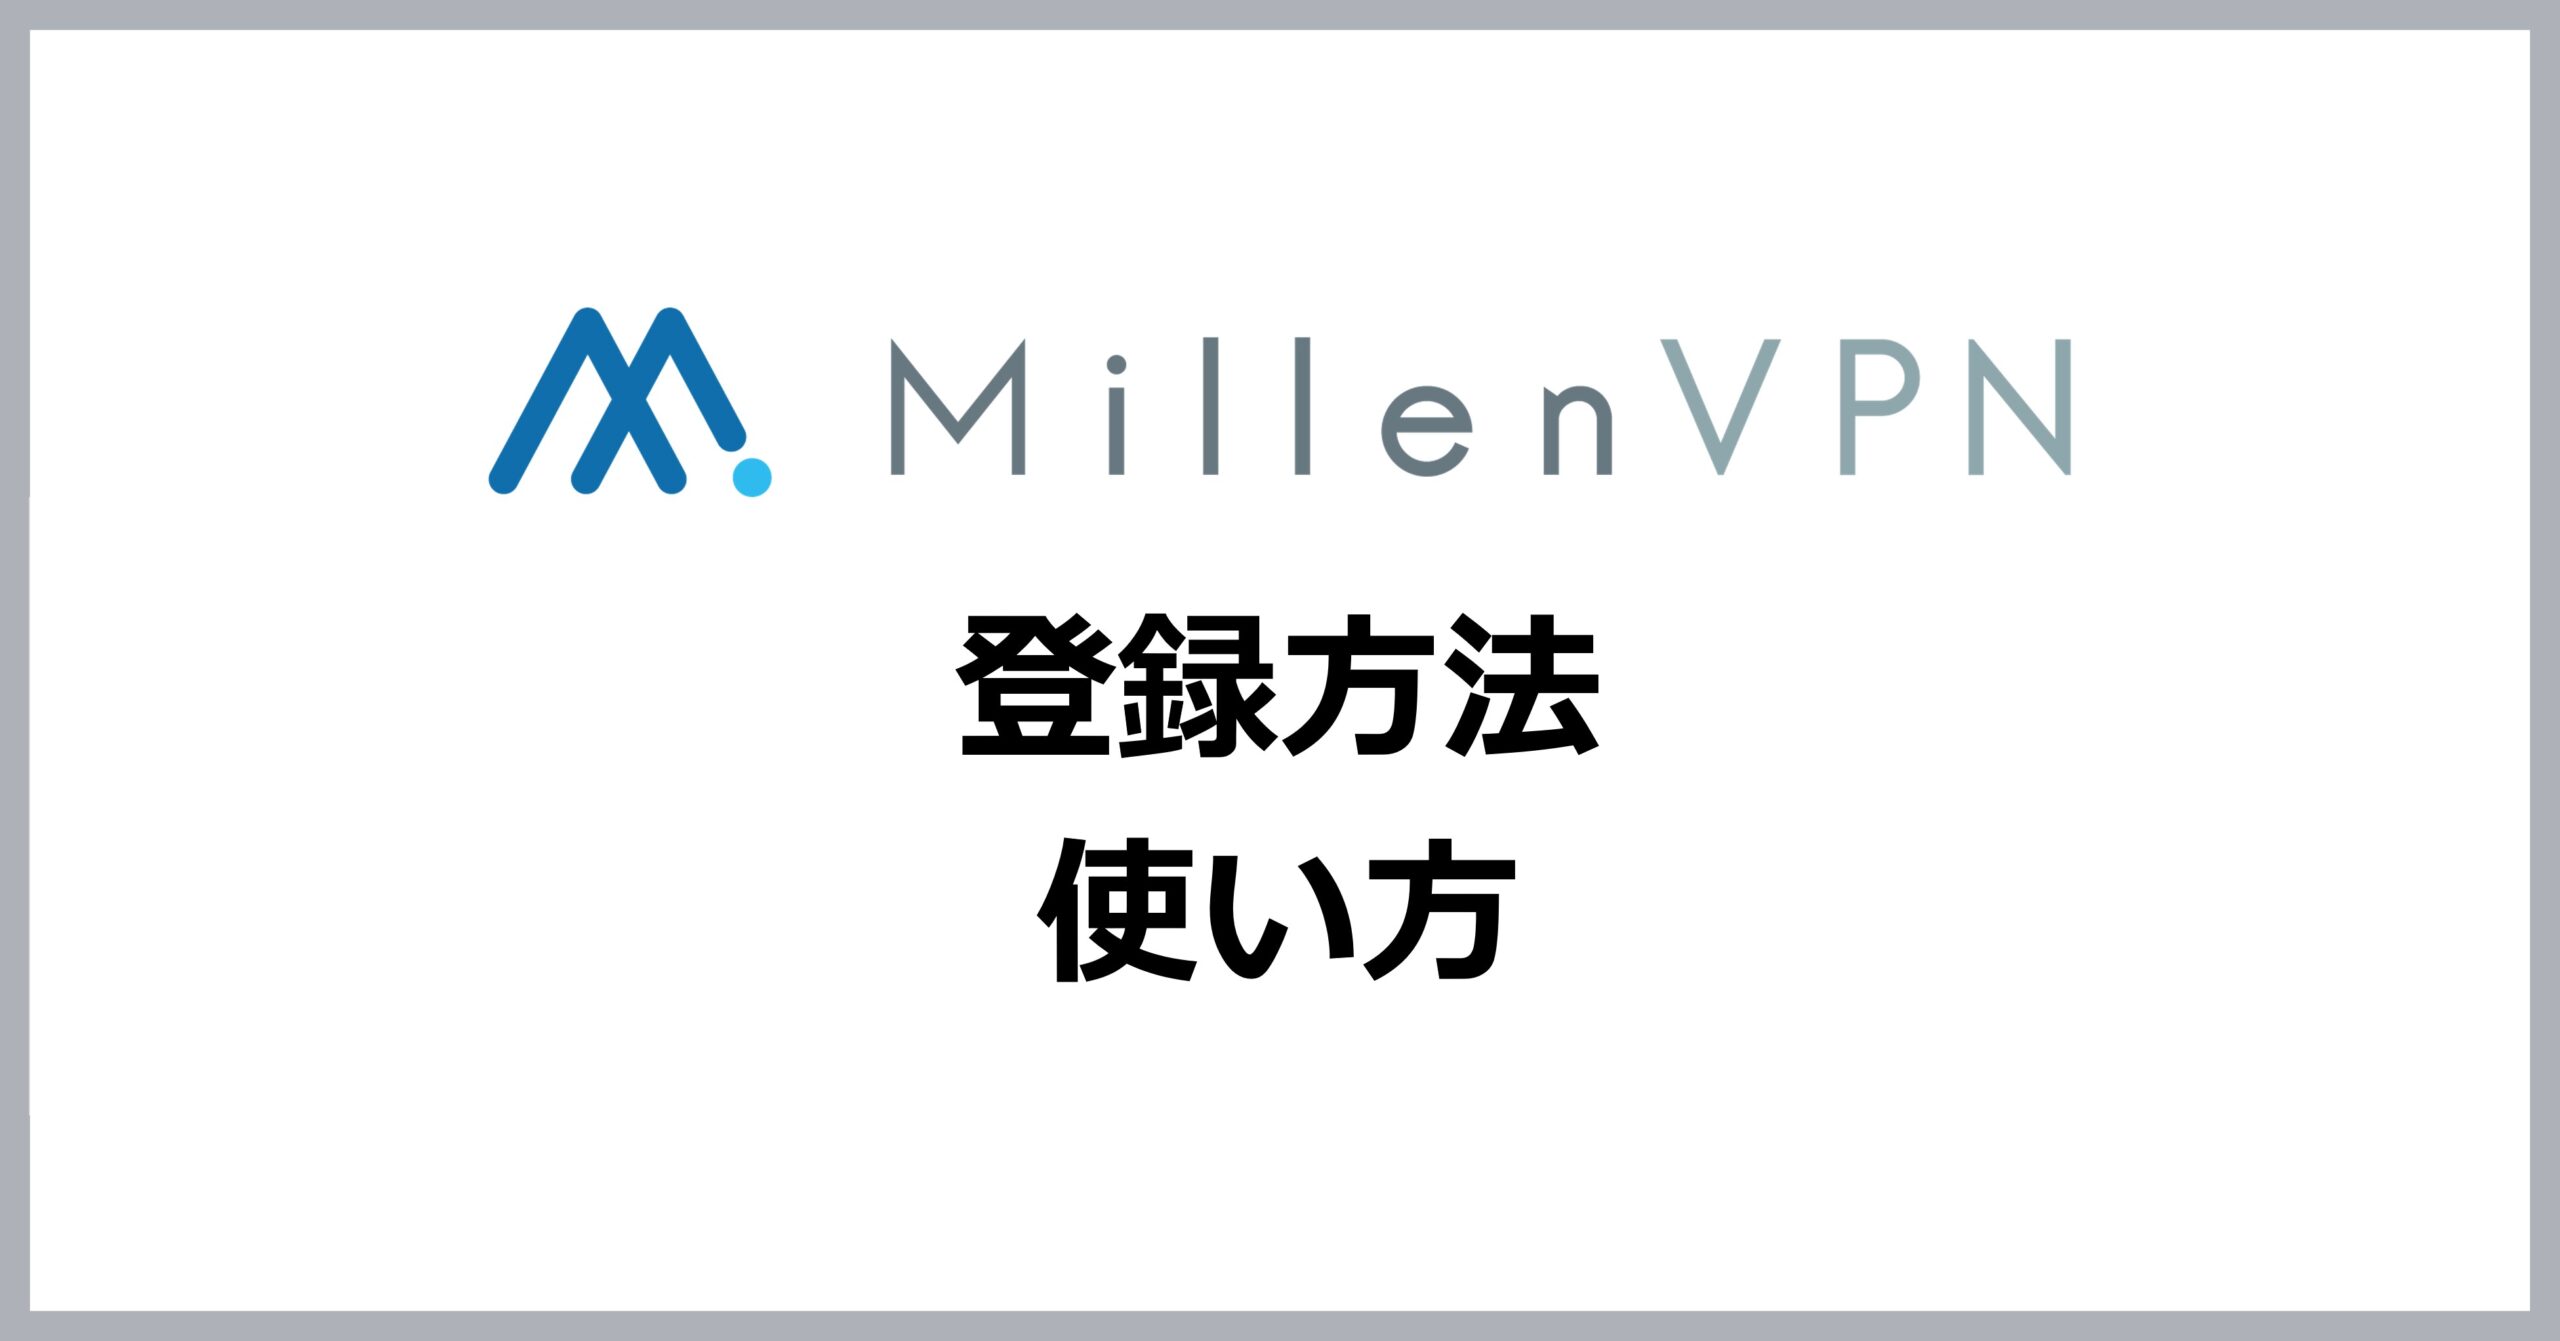 MillenVPNの登録方法・使い方